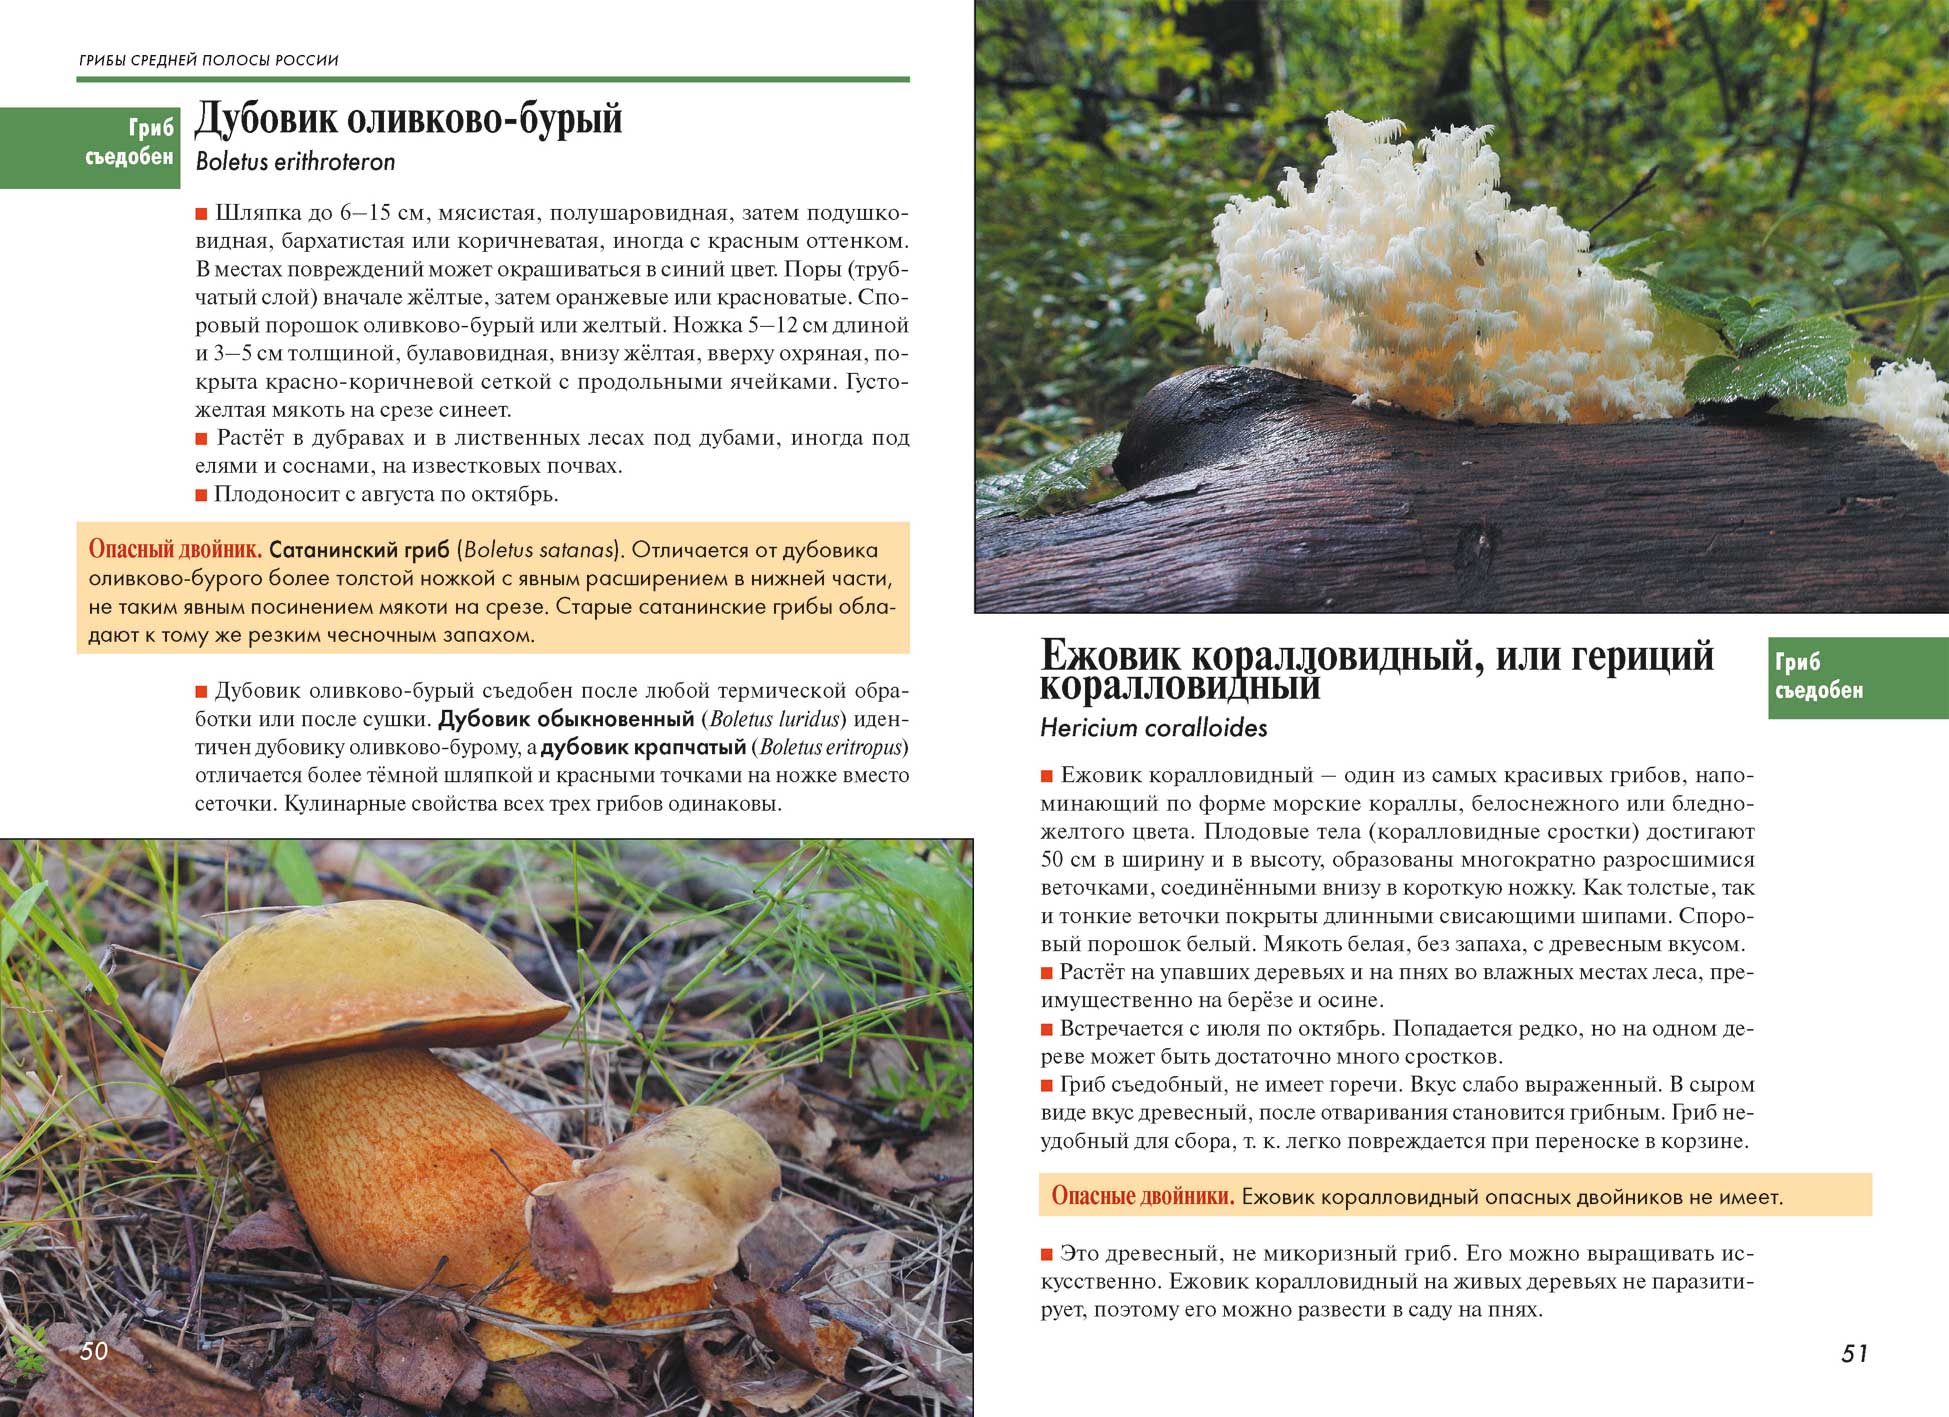 Дубовик крапчатый (boletus erythropus): фото, описание и как готовить гриб